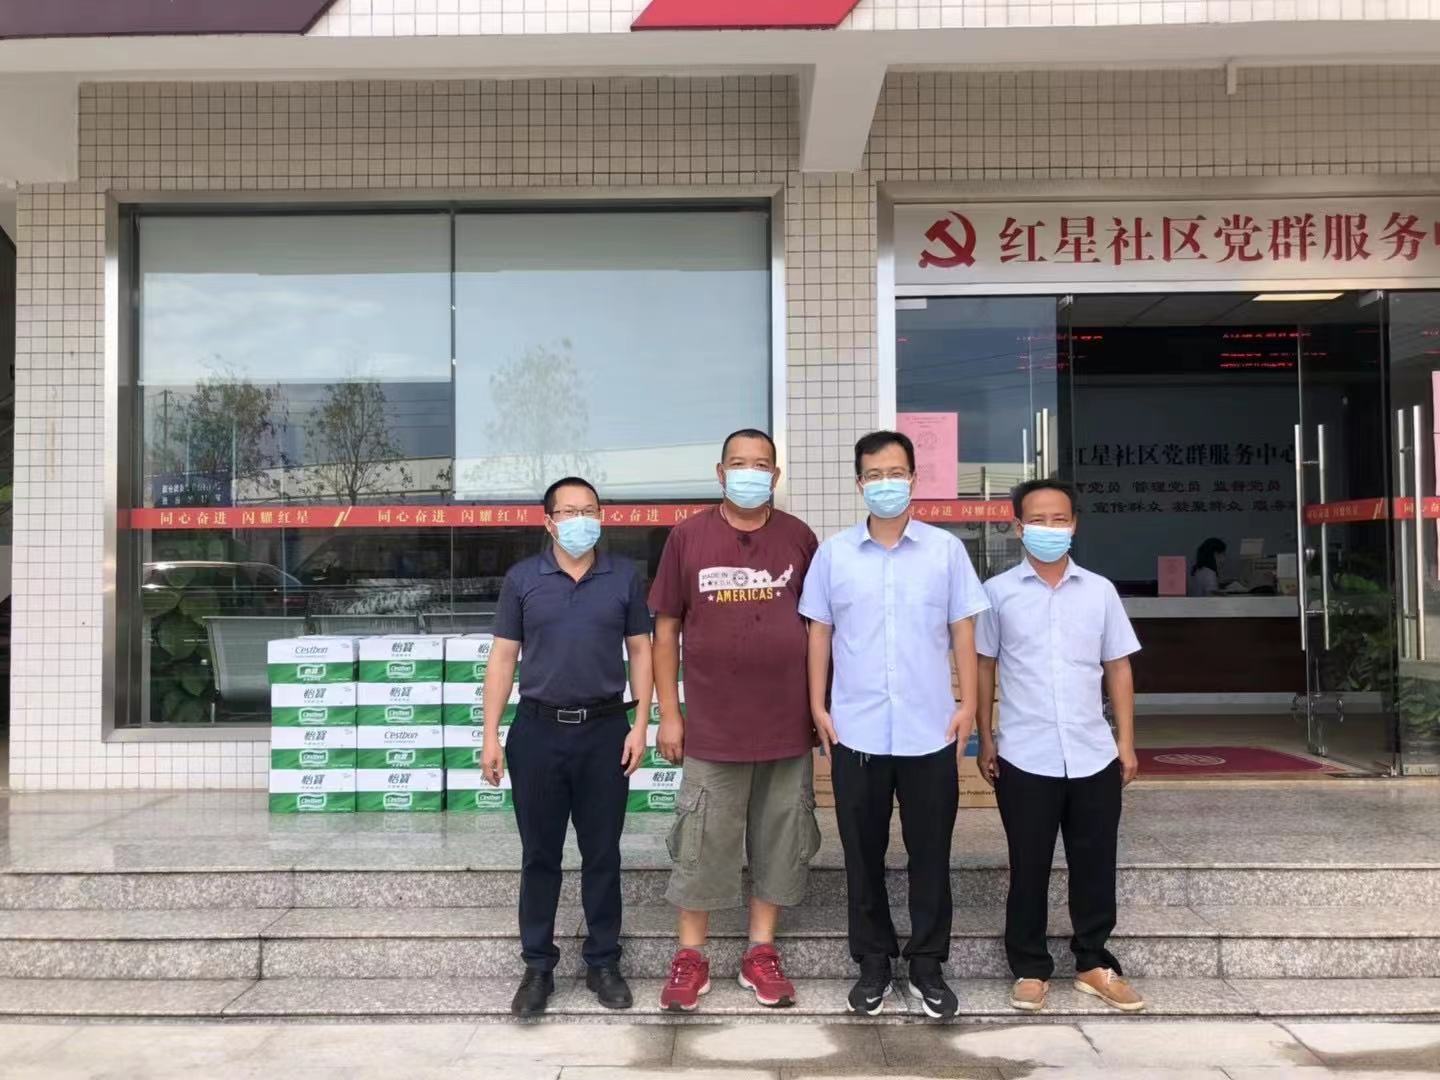 Rayson Company bekämpft die Epidemie zusammen mit allen Menschen in Nanhai